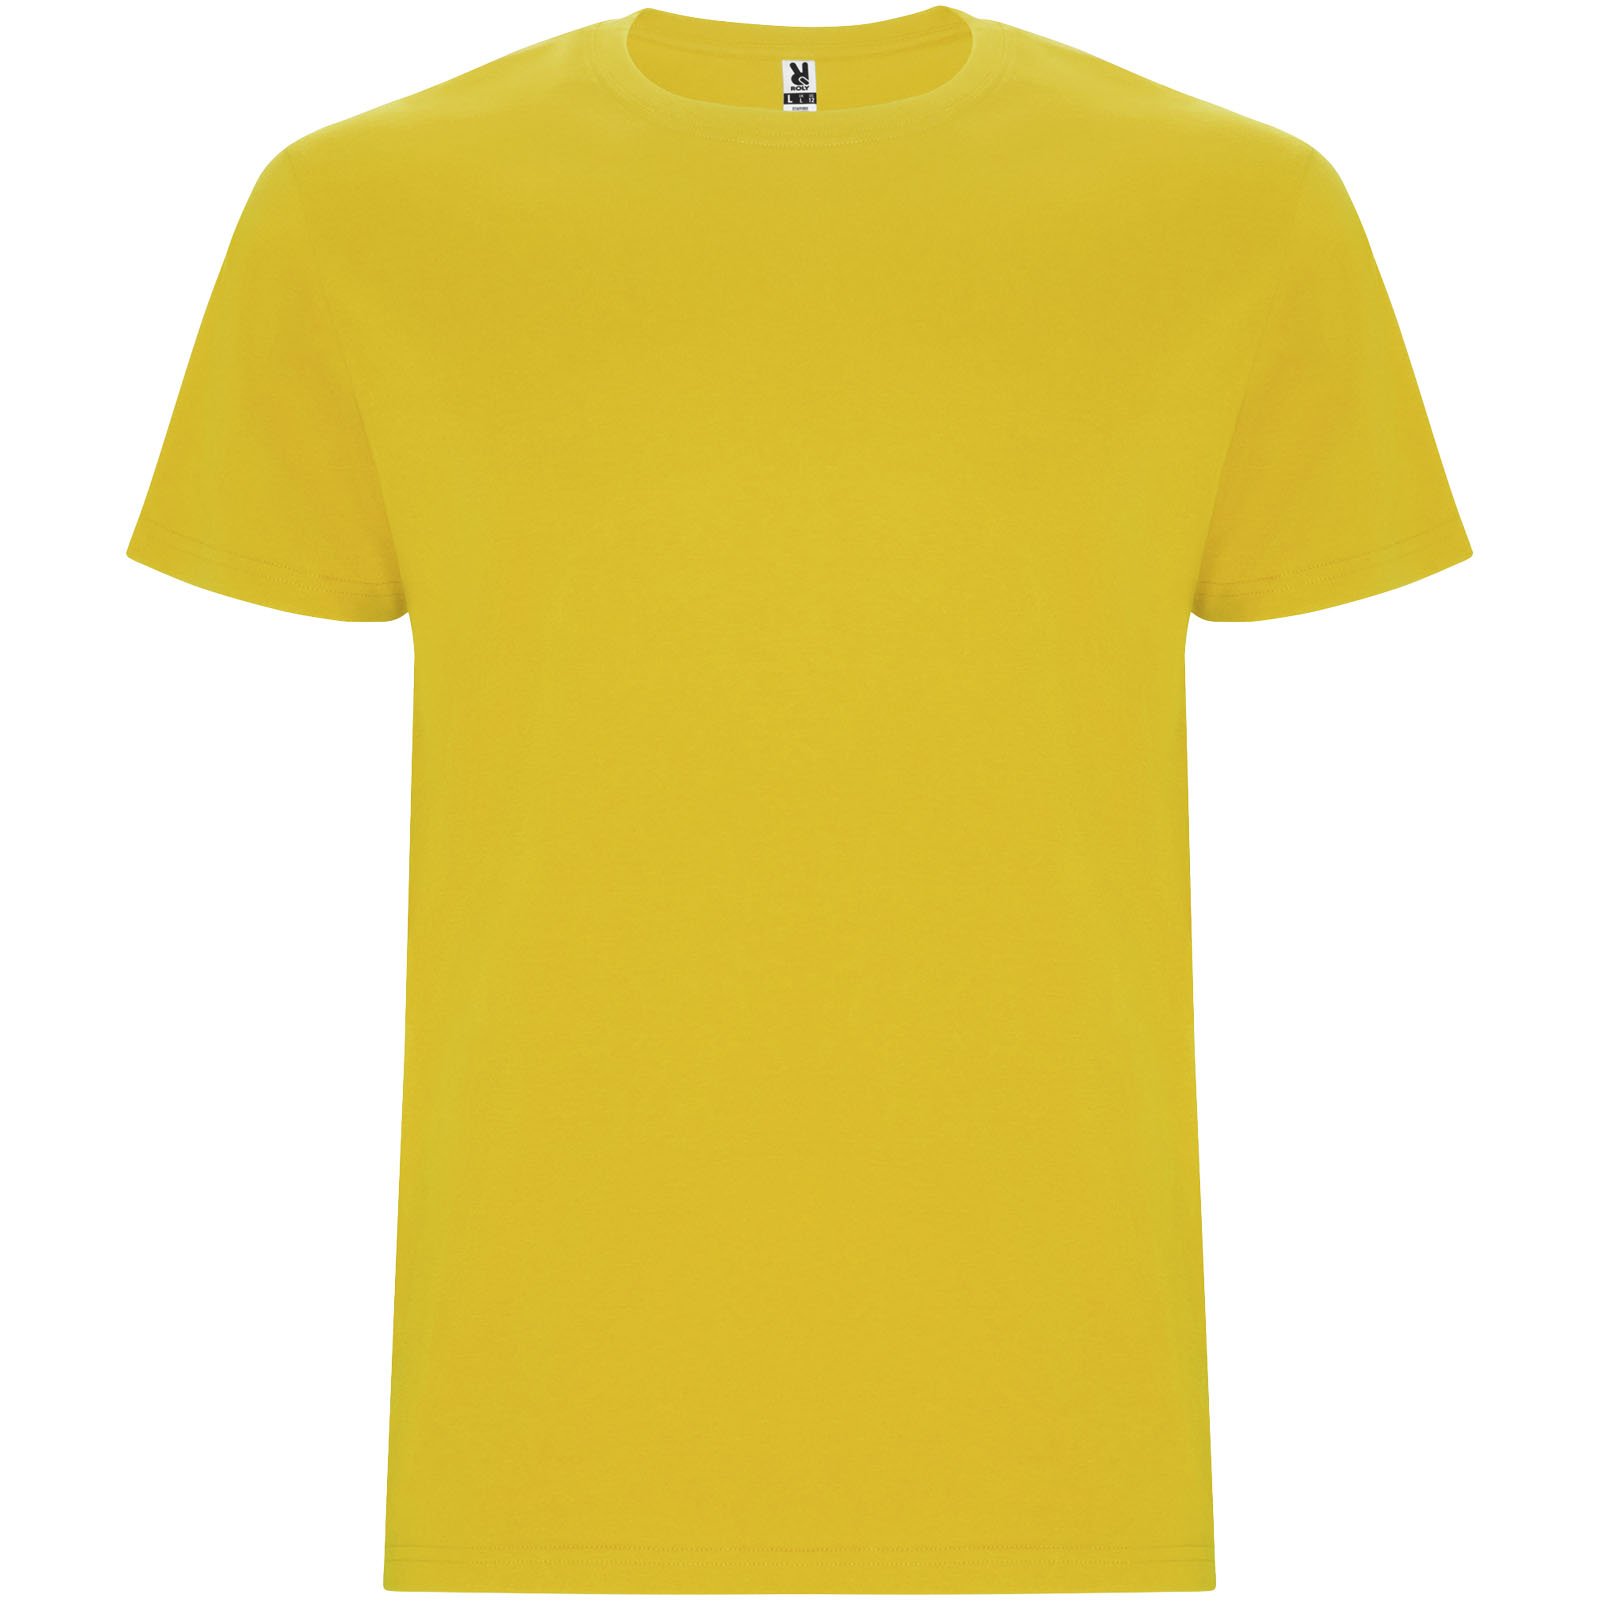 Vêtements - T-shirt Stafford à manches courtes pour enfant